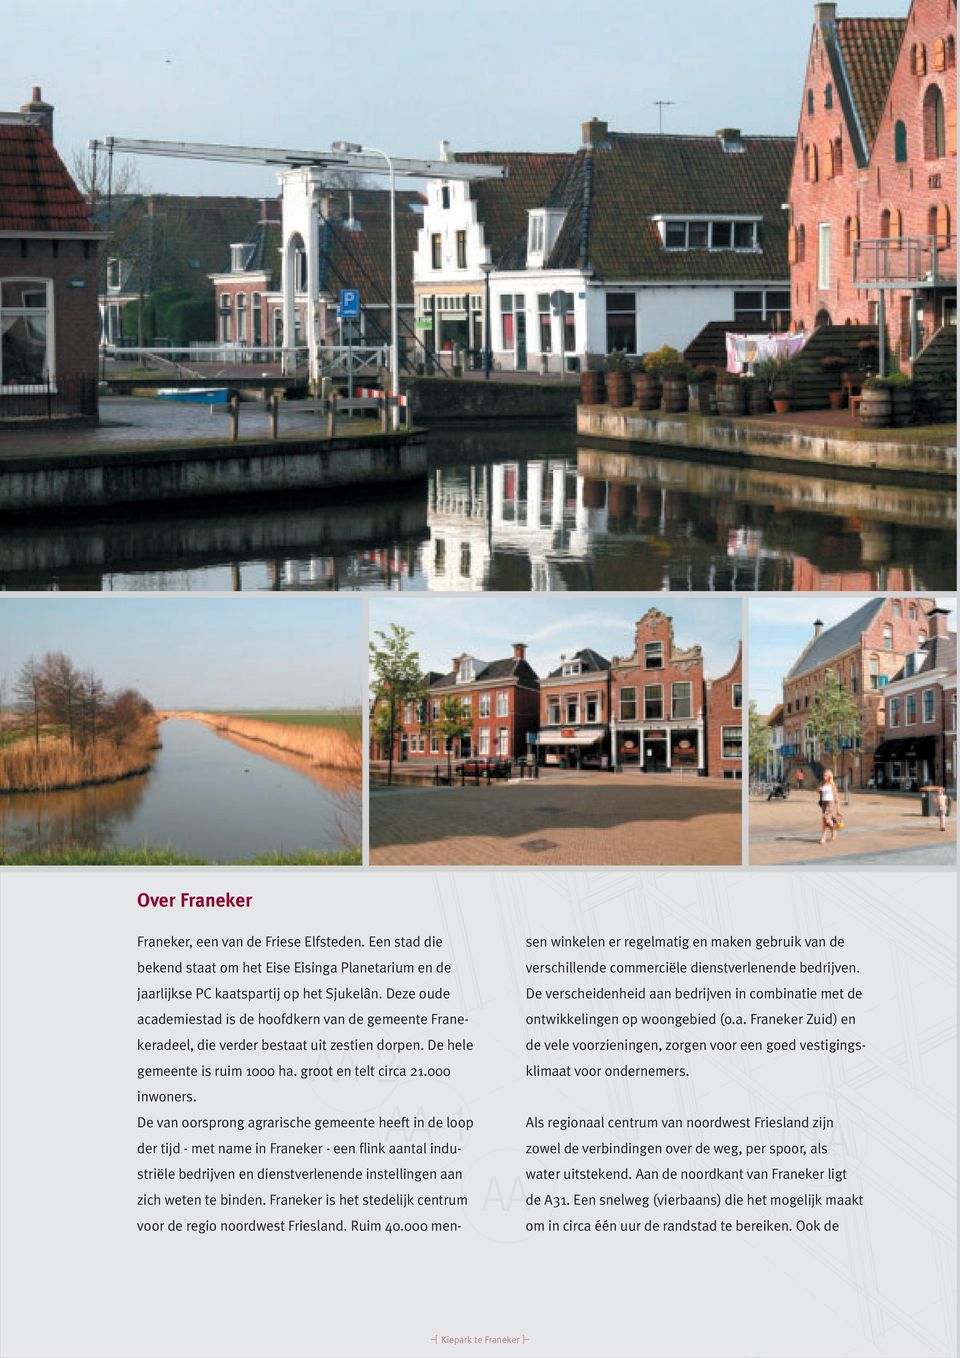 De van oorsprong agrarische gemeente heeft in de loop der tijd - met name in Franeker - een flink aantal industriële bedrijven en dienstverlenende instellingen aan zich weten te binden.